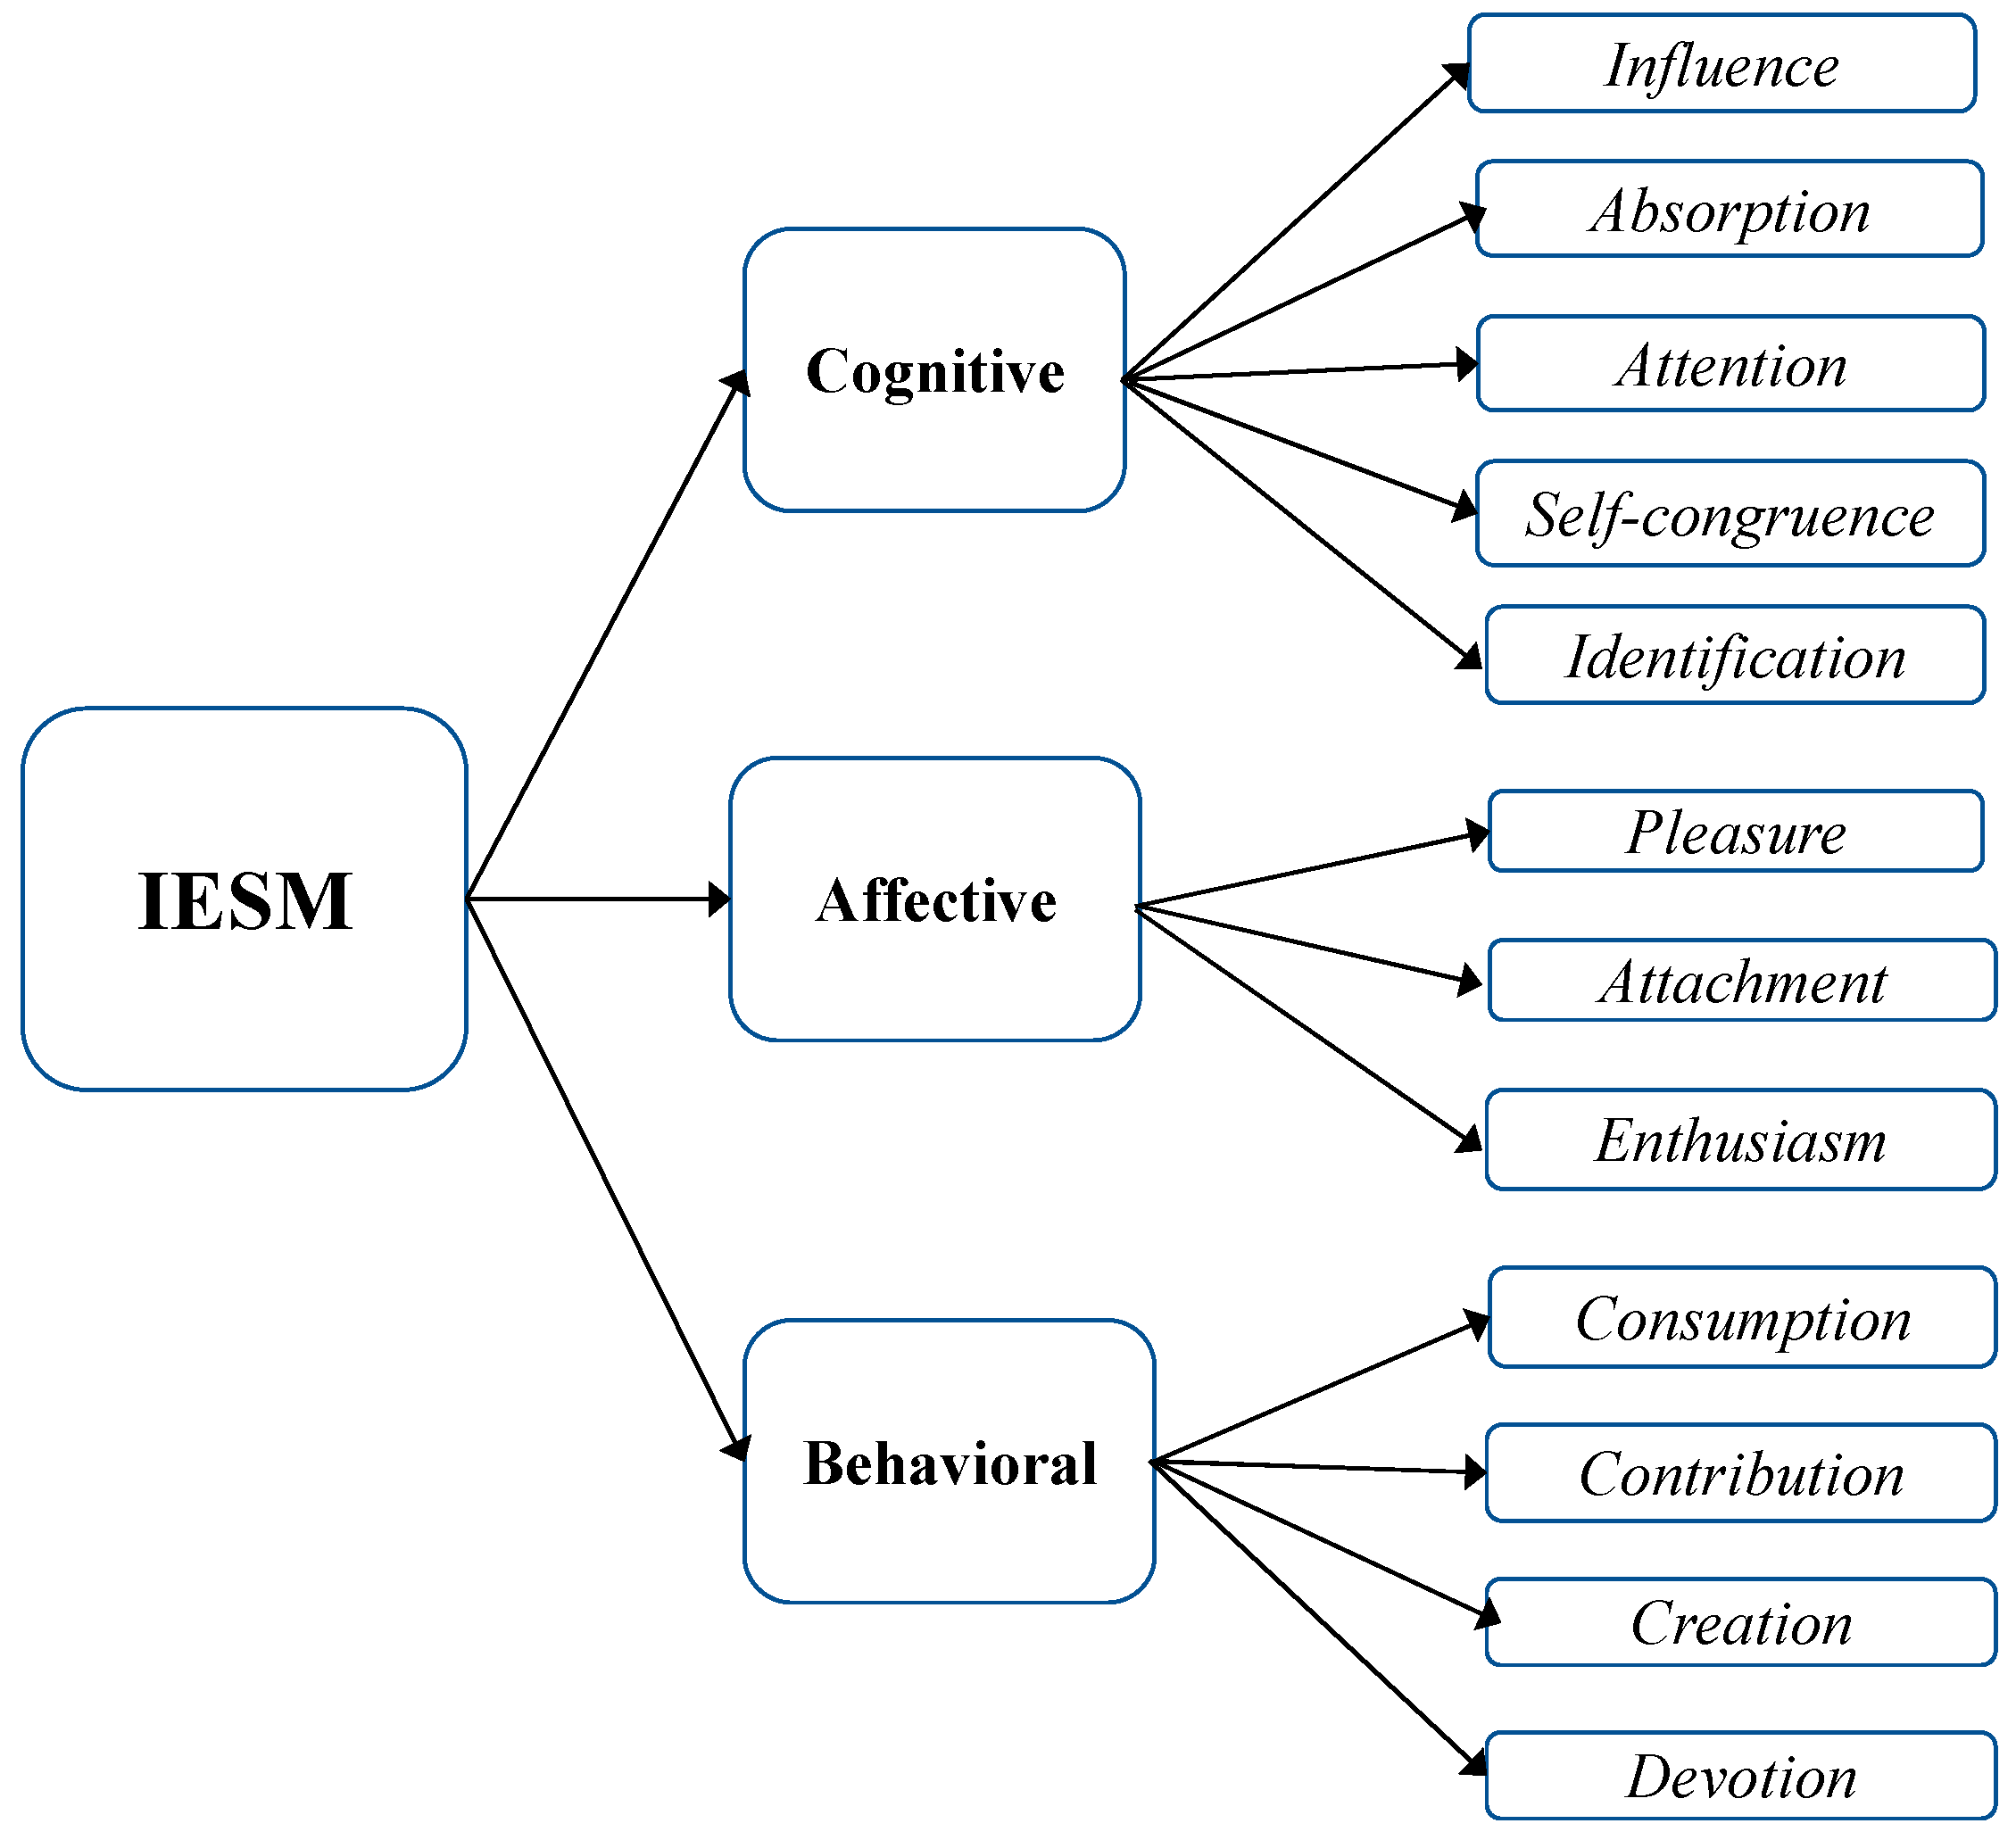 3 Conceptual framework by Hennig-Thurau et al. (2006). x 1